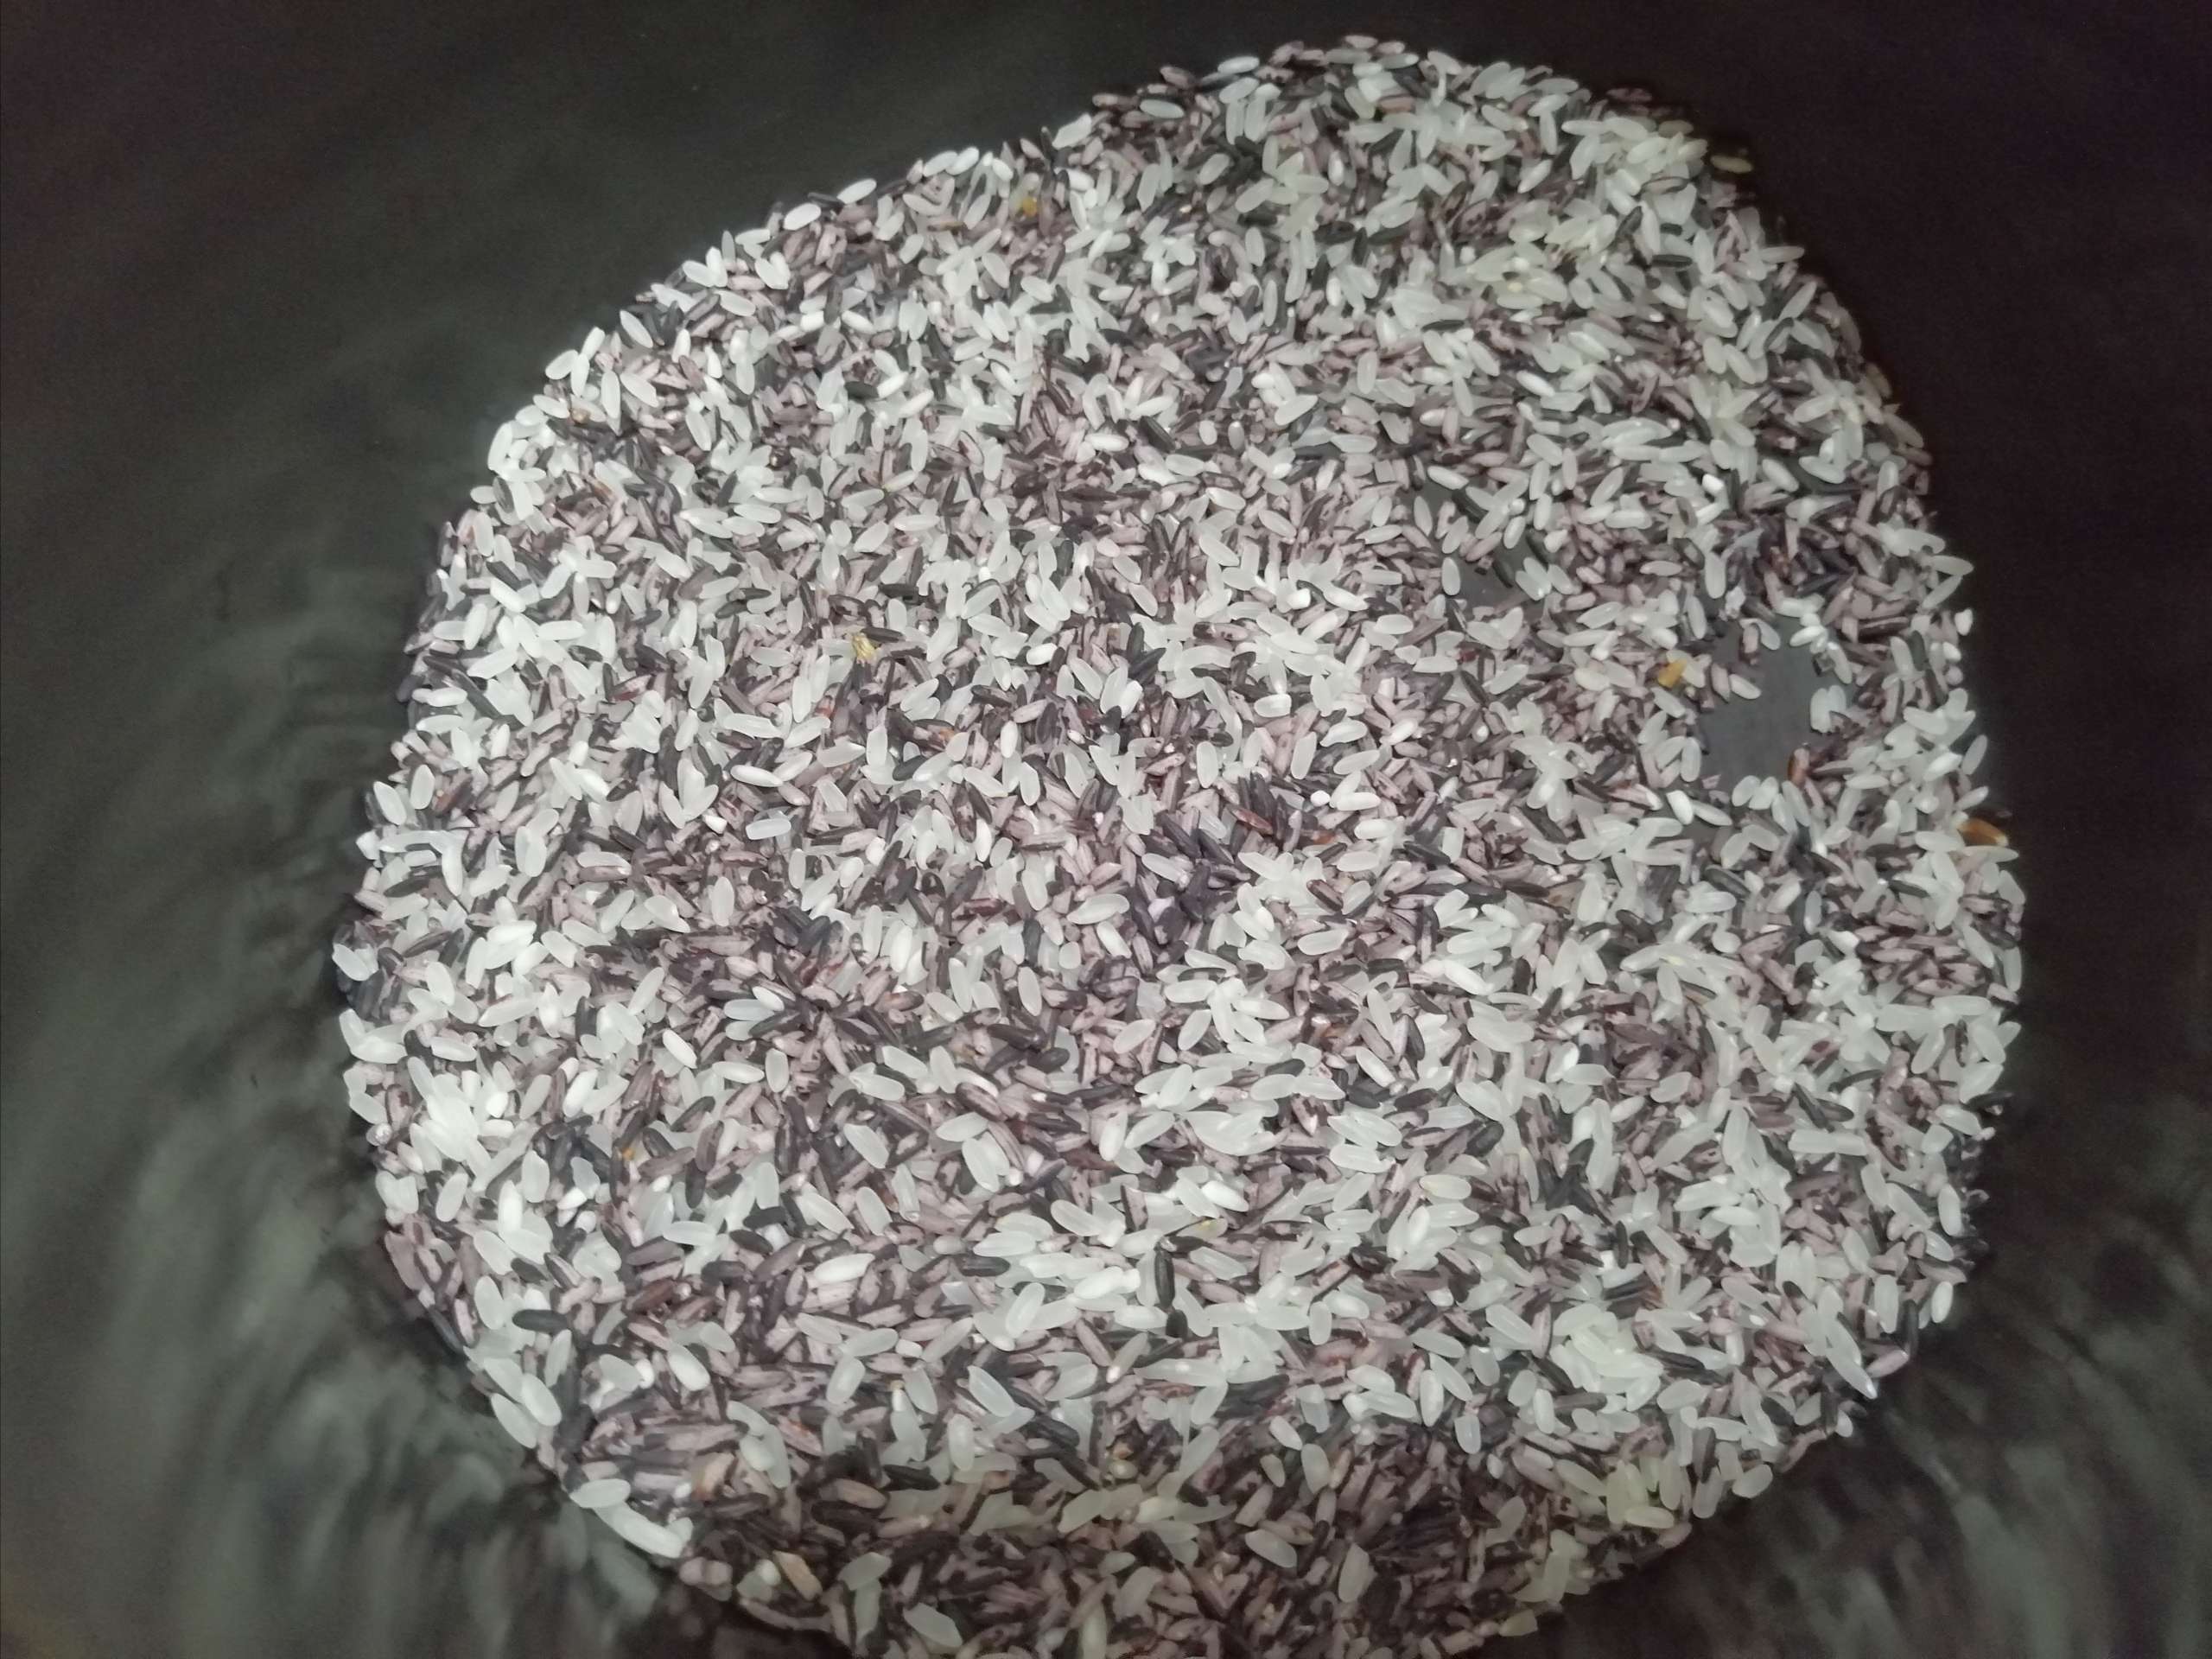 Purple Rice Bread recipe